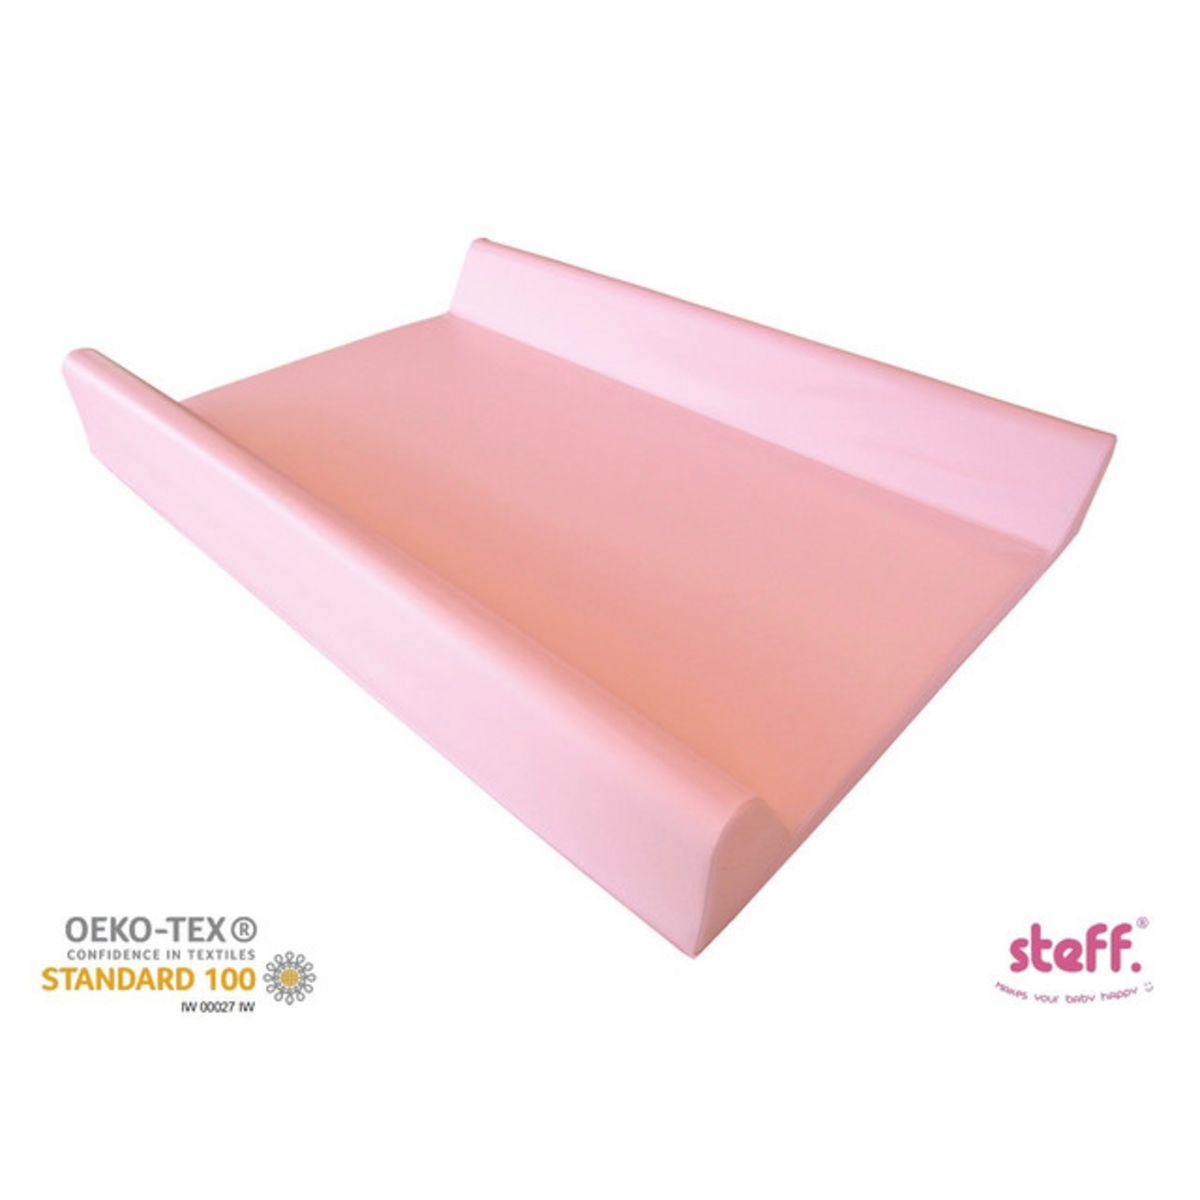  Steff - Matelas à langer avec rebords - 70x50 cm - Rose - Label de qualité OEKO-TEX standard 100